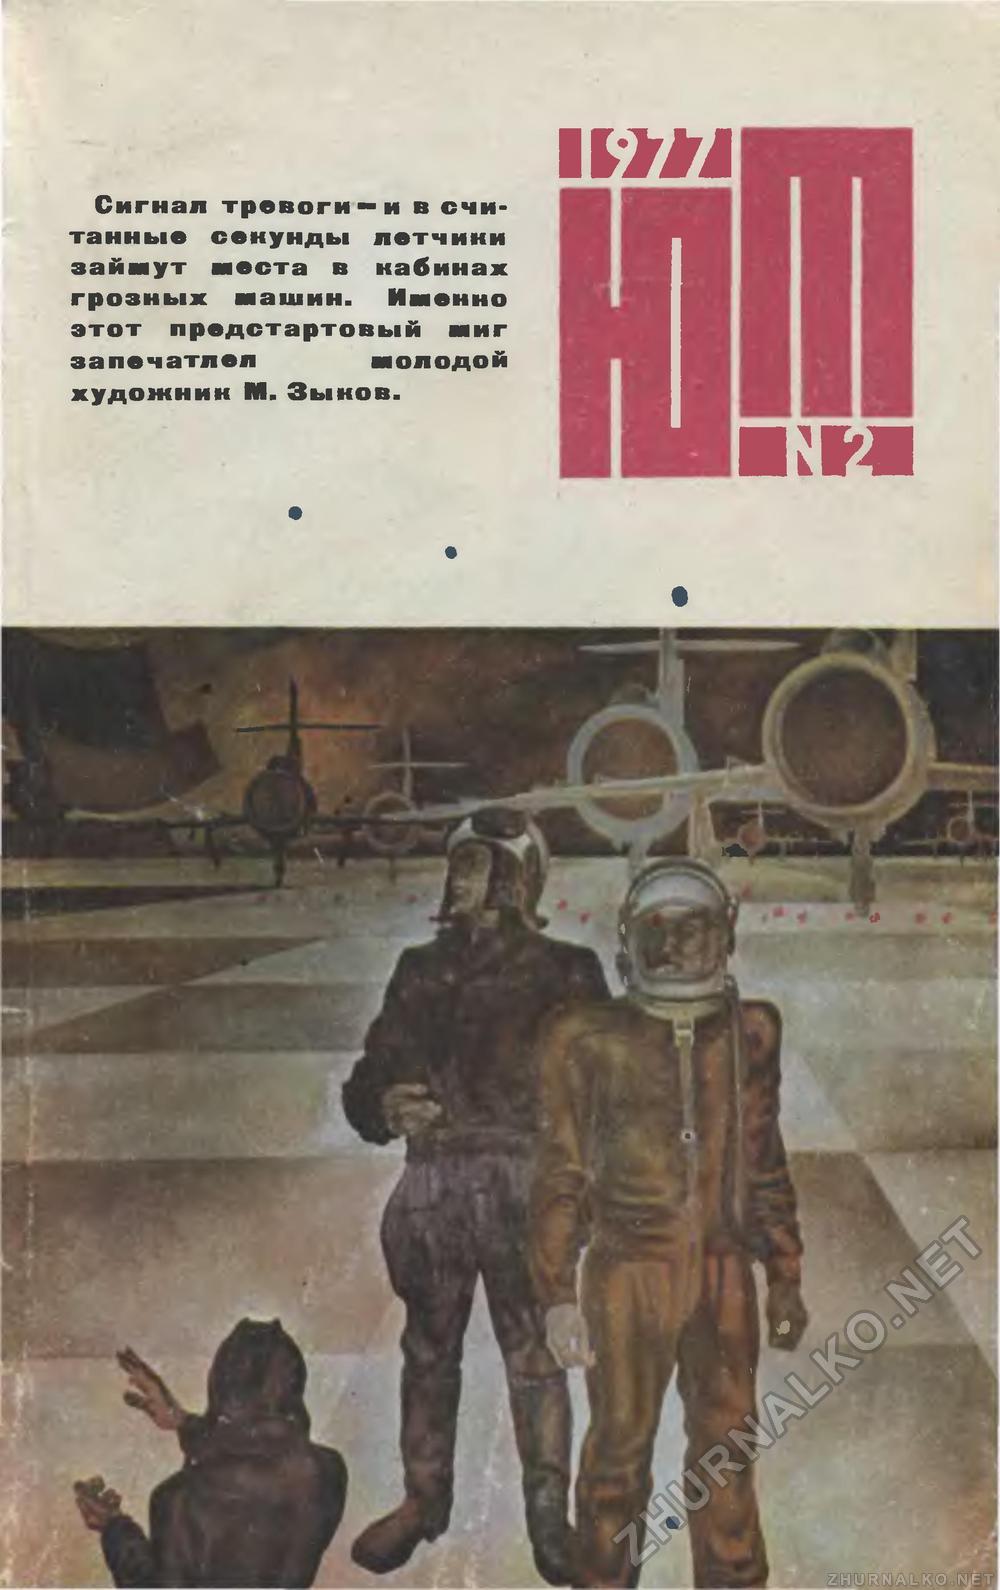   1977-02,  1